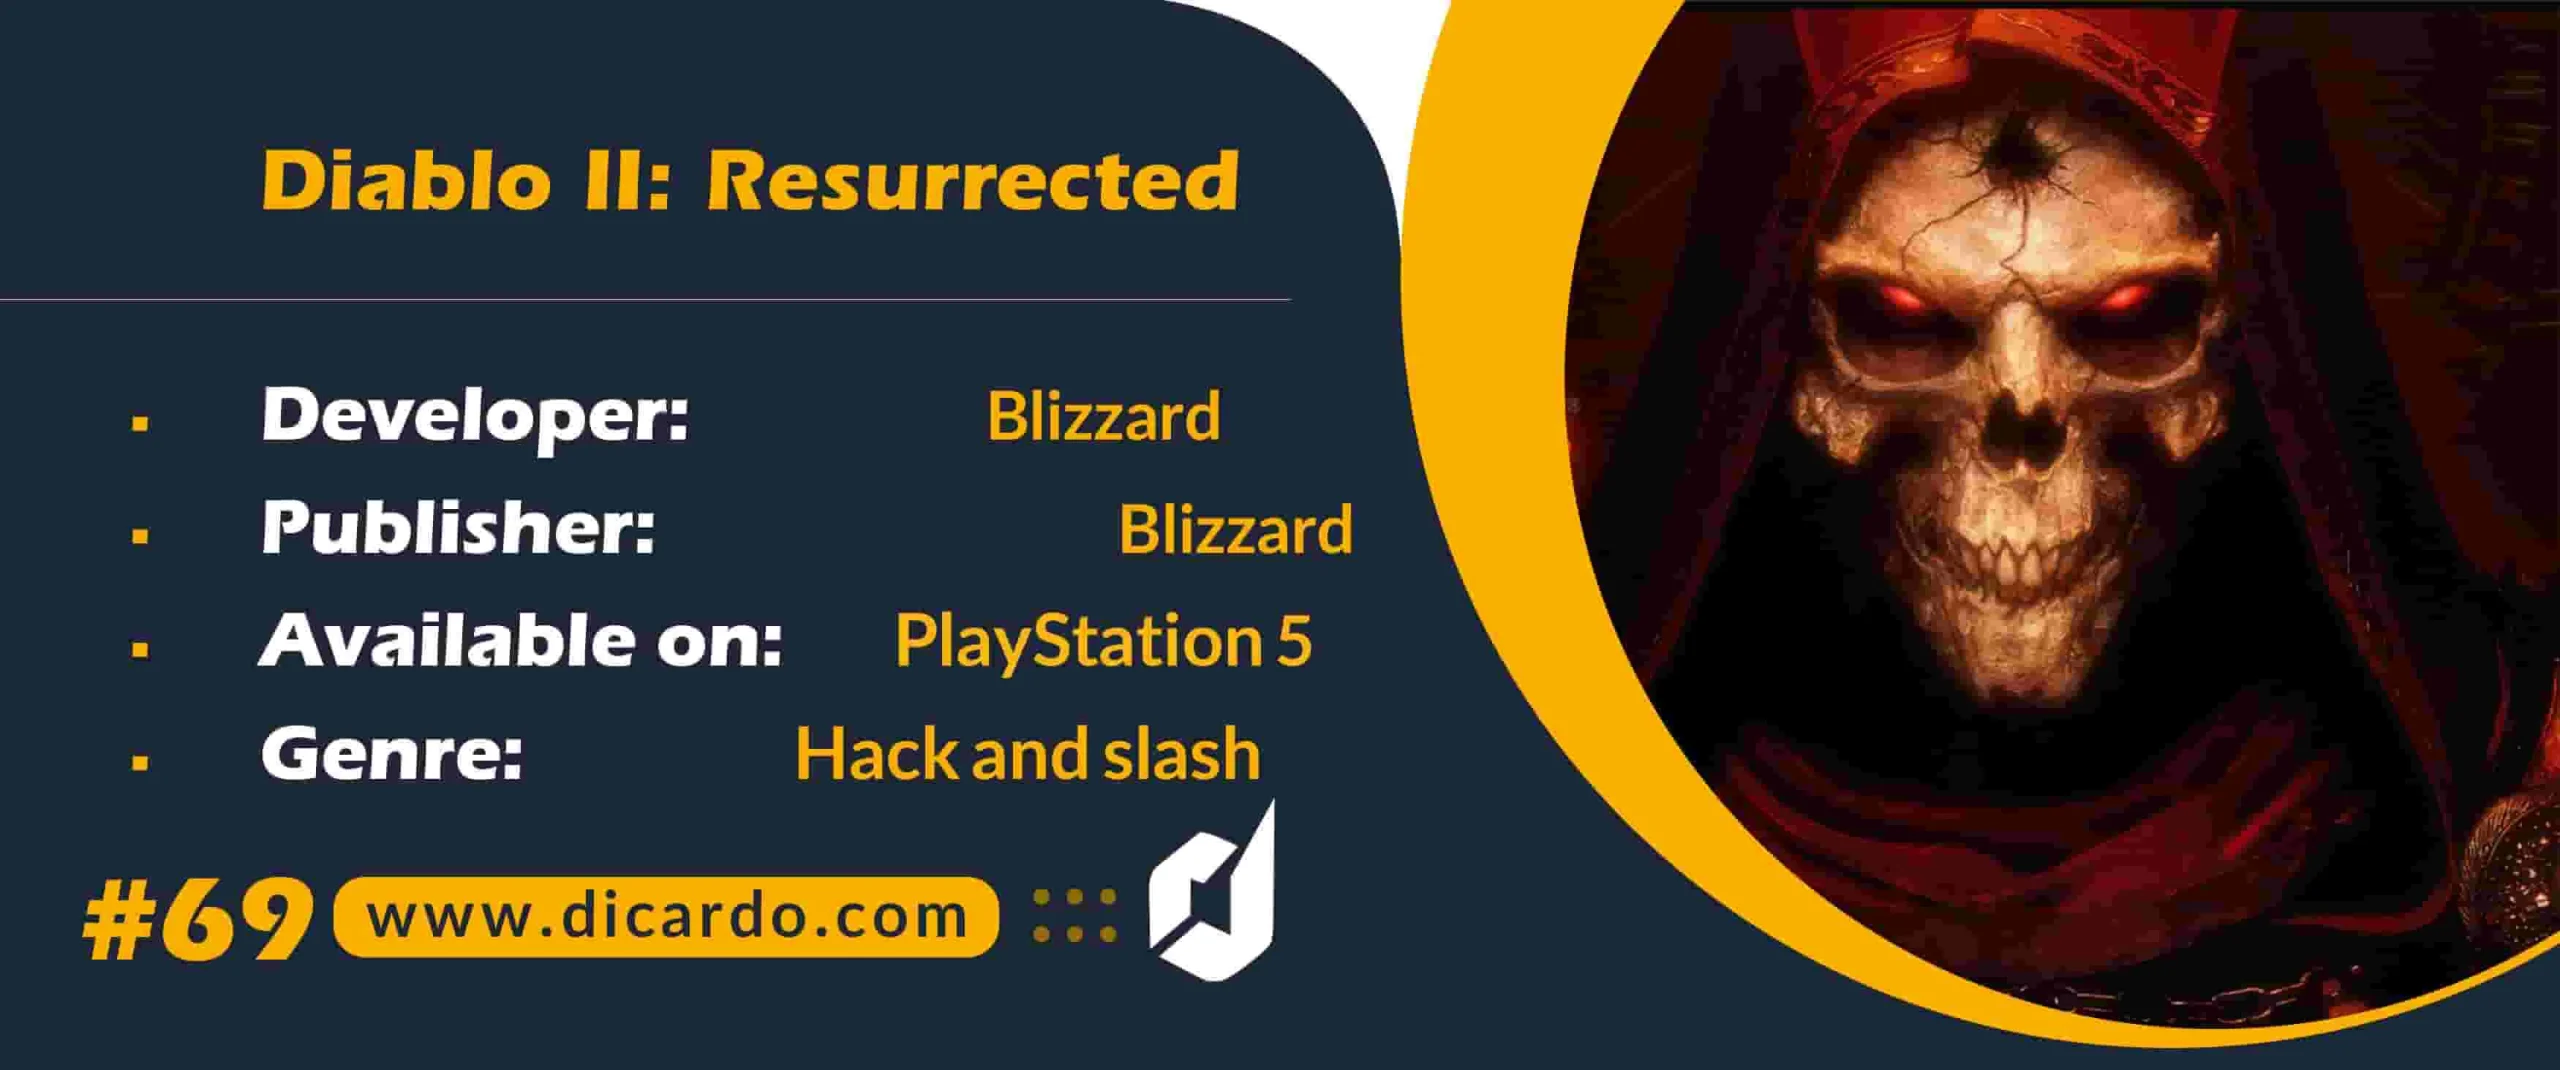 #69 دیابلو 2 ریسورکتد Diablo II: Resurrected